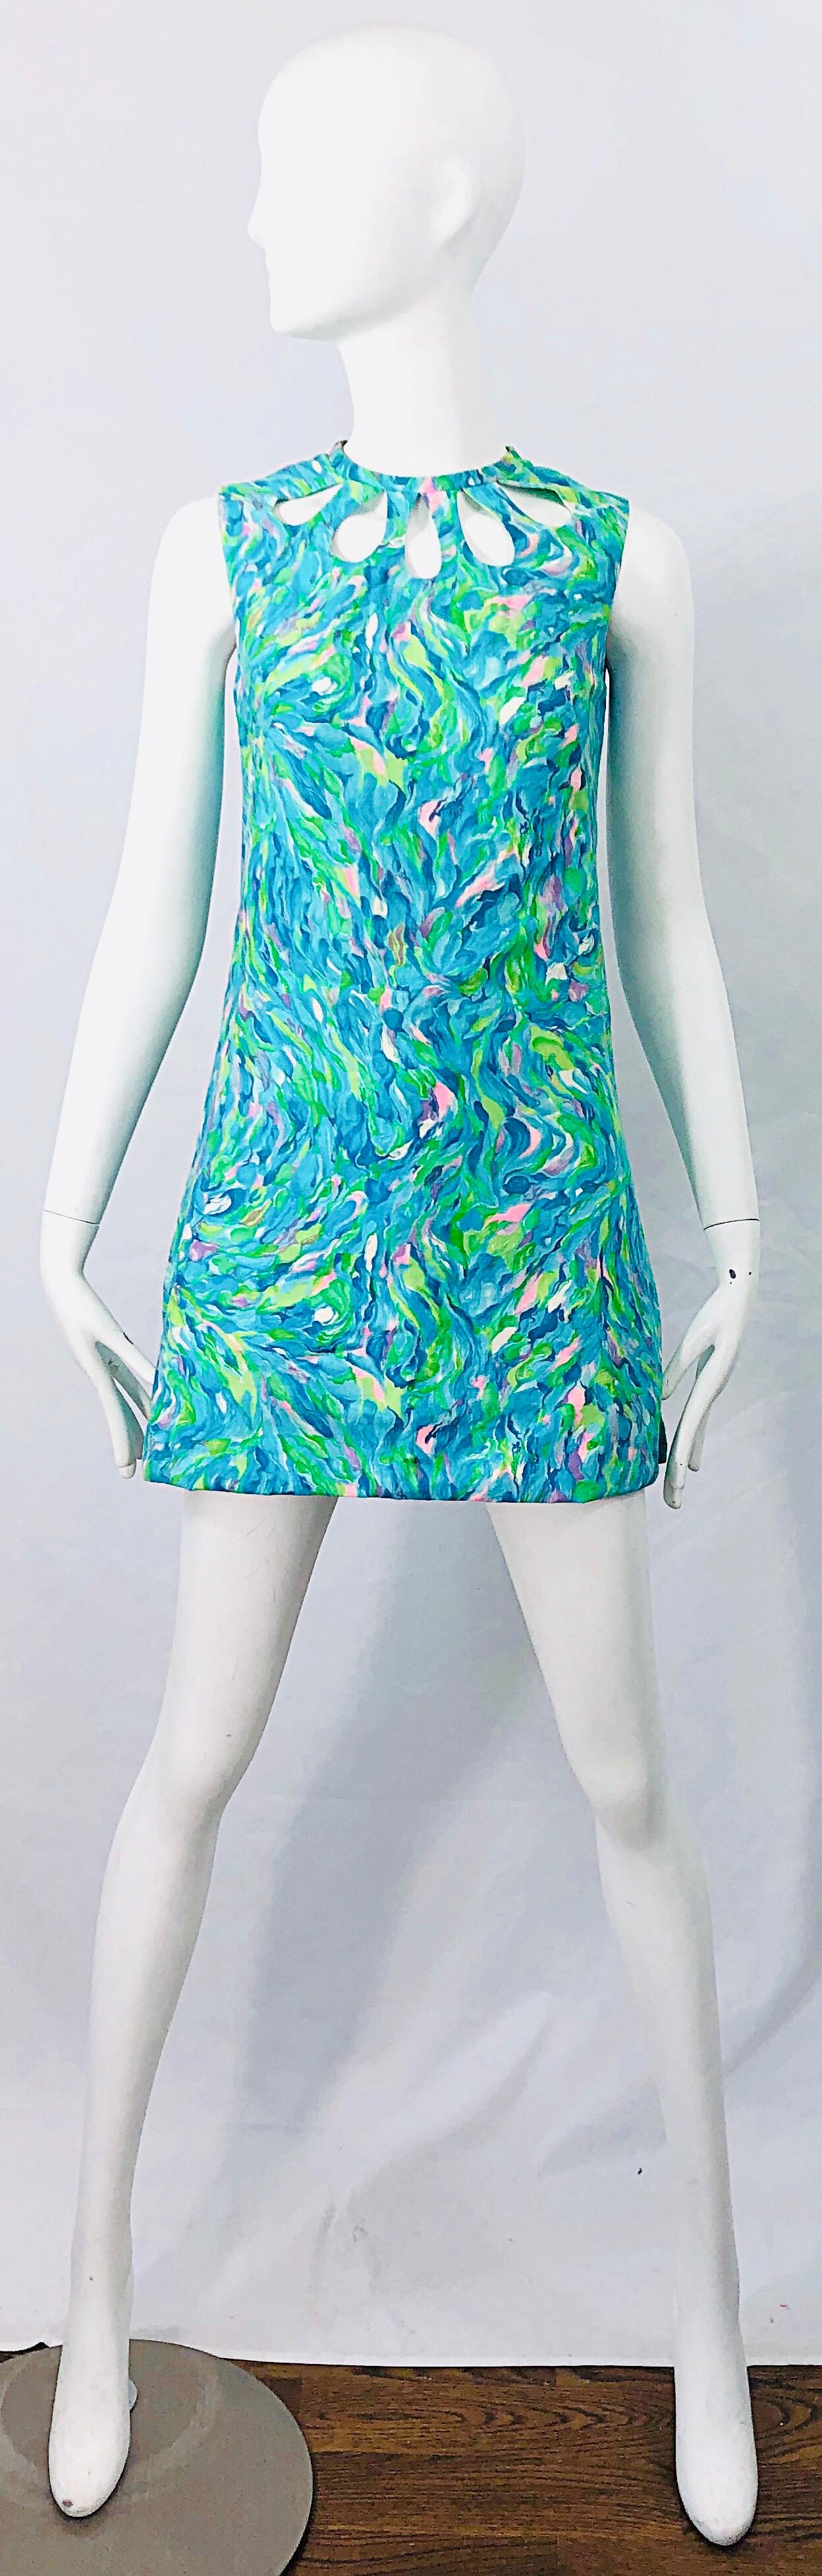 1960s Romper Watercolor Pastel Cut Out Cotton Vintage 60s Shift Dress Jumpsuit 7